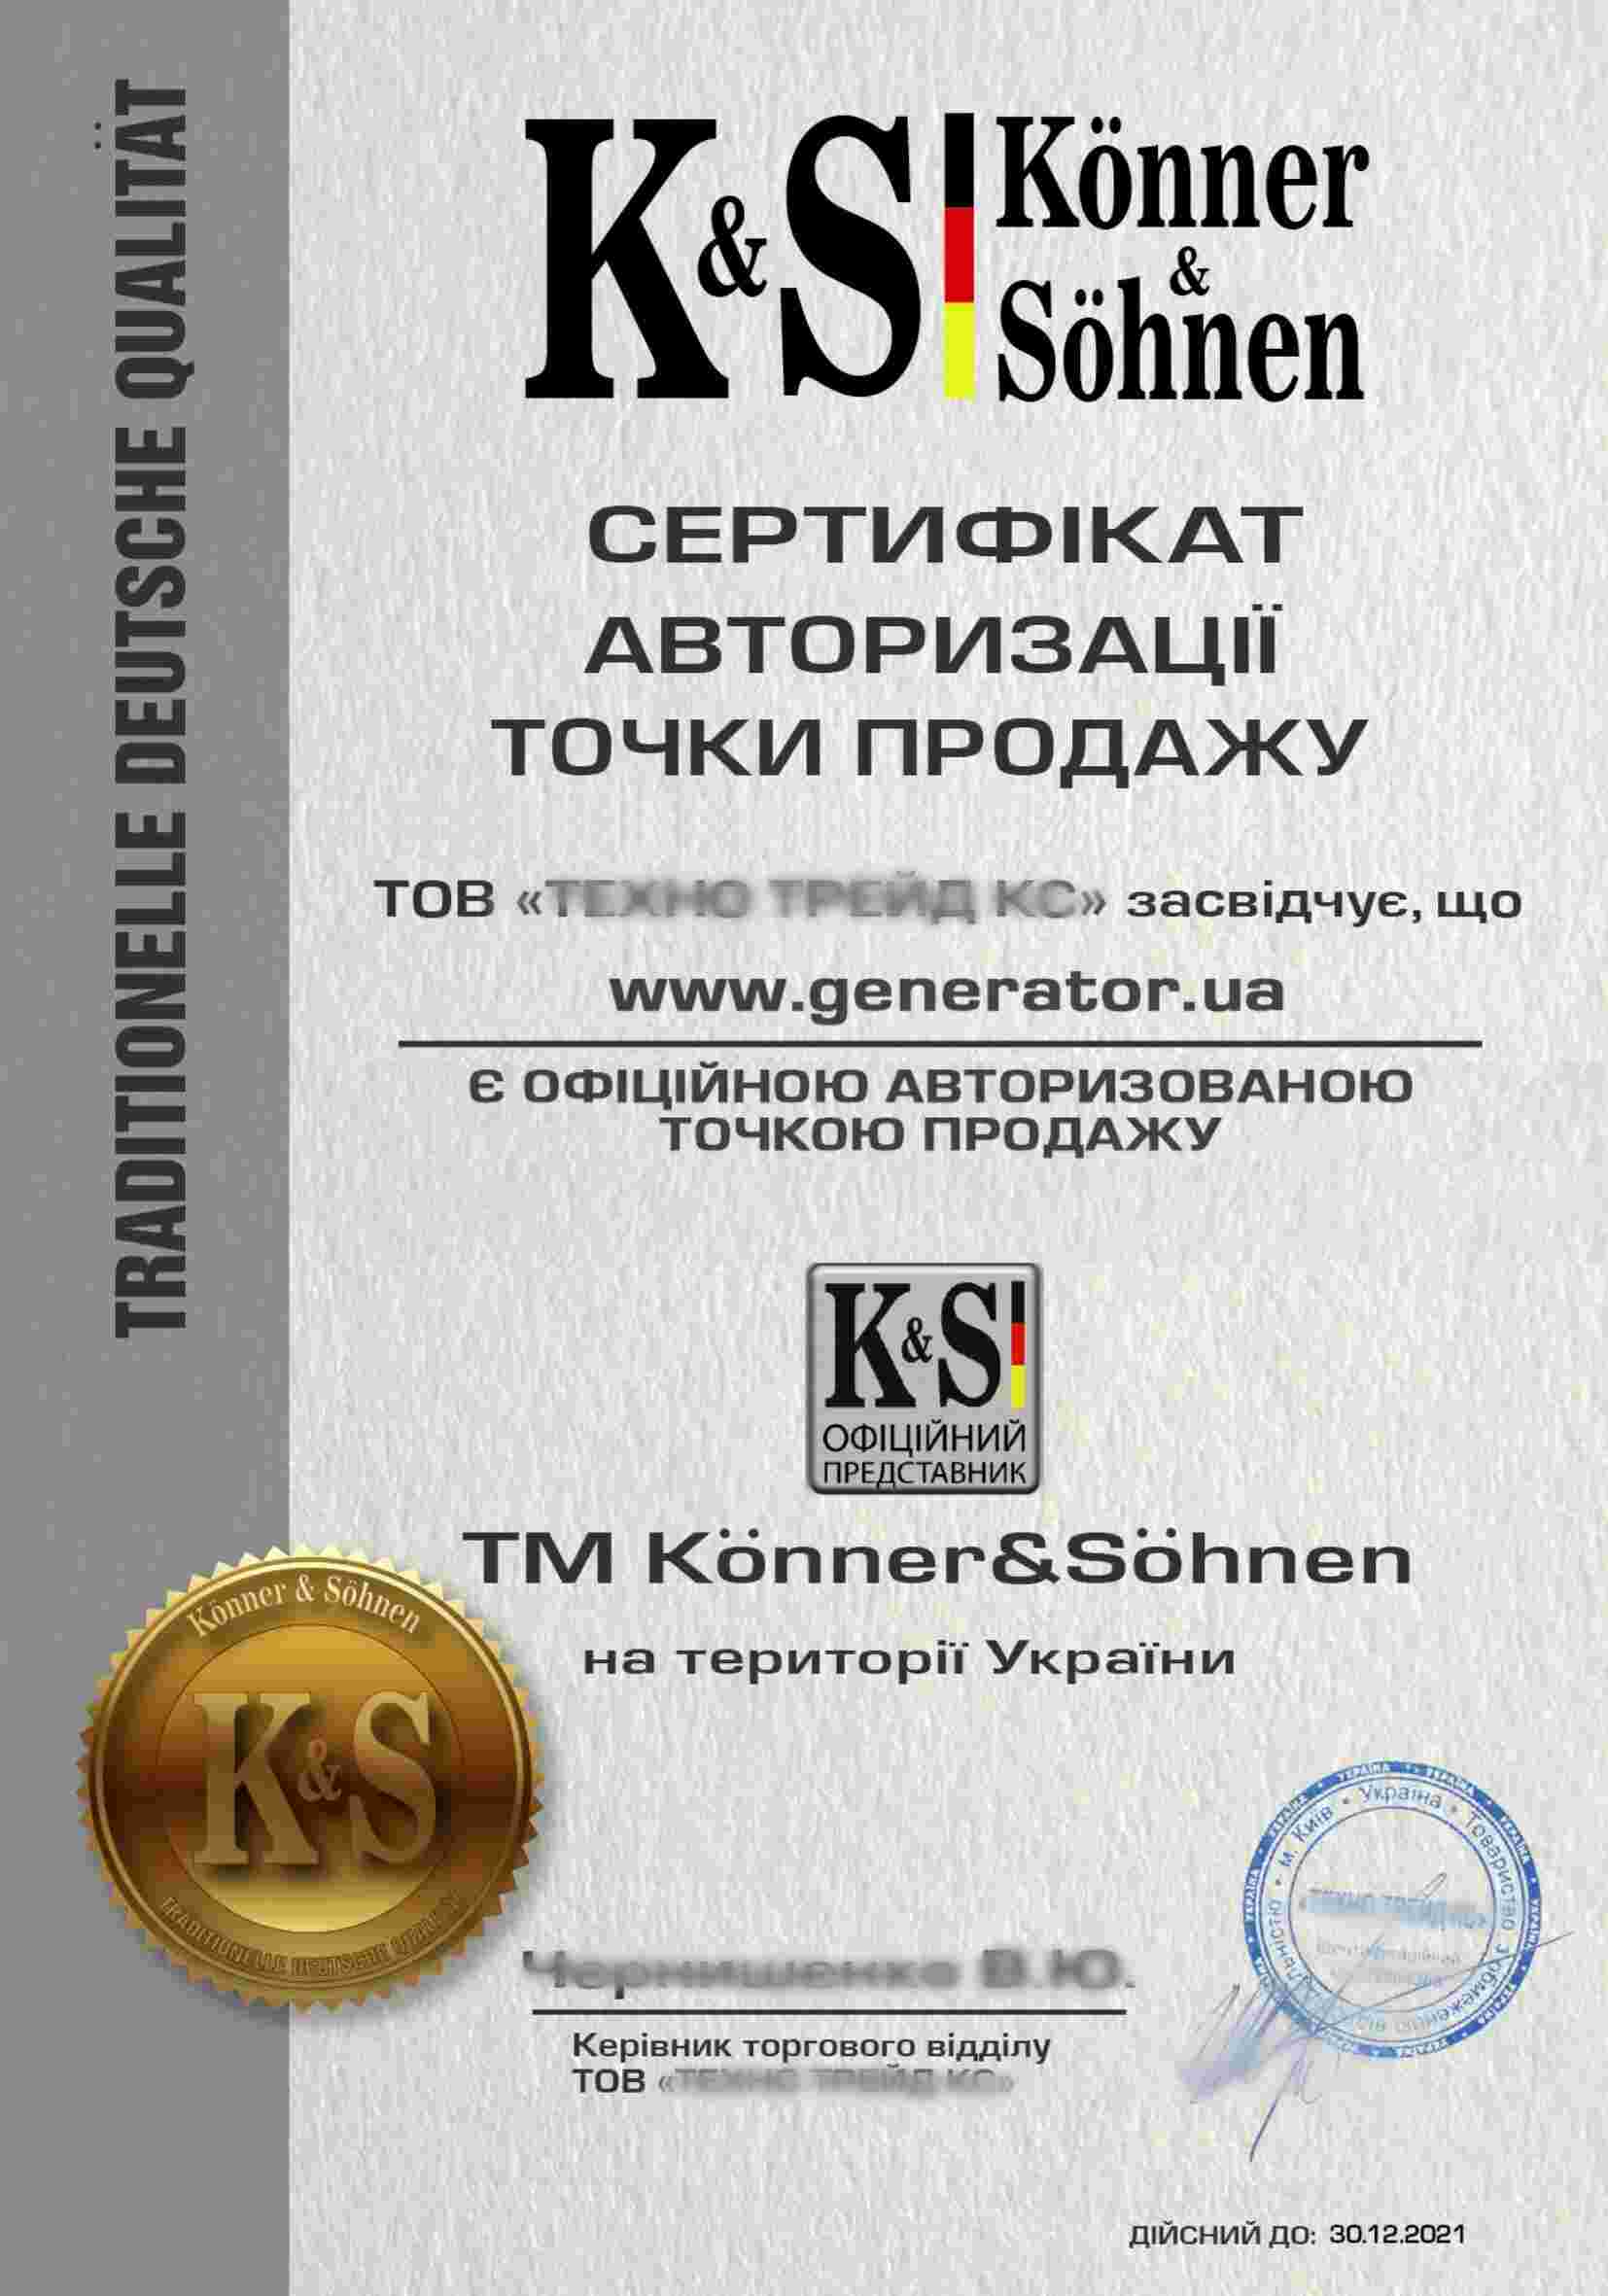 Сертификат Konner&Sohnen